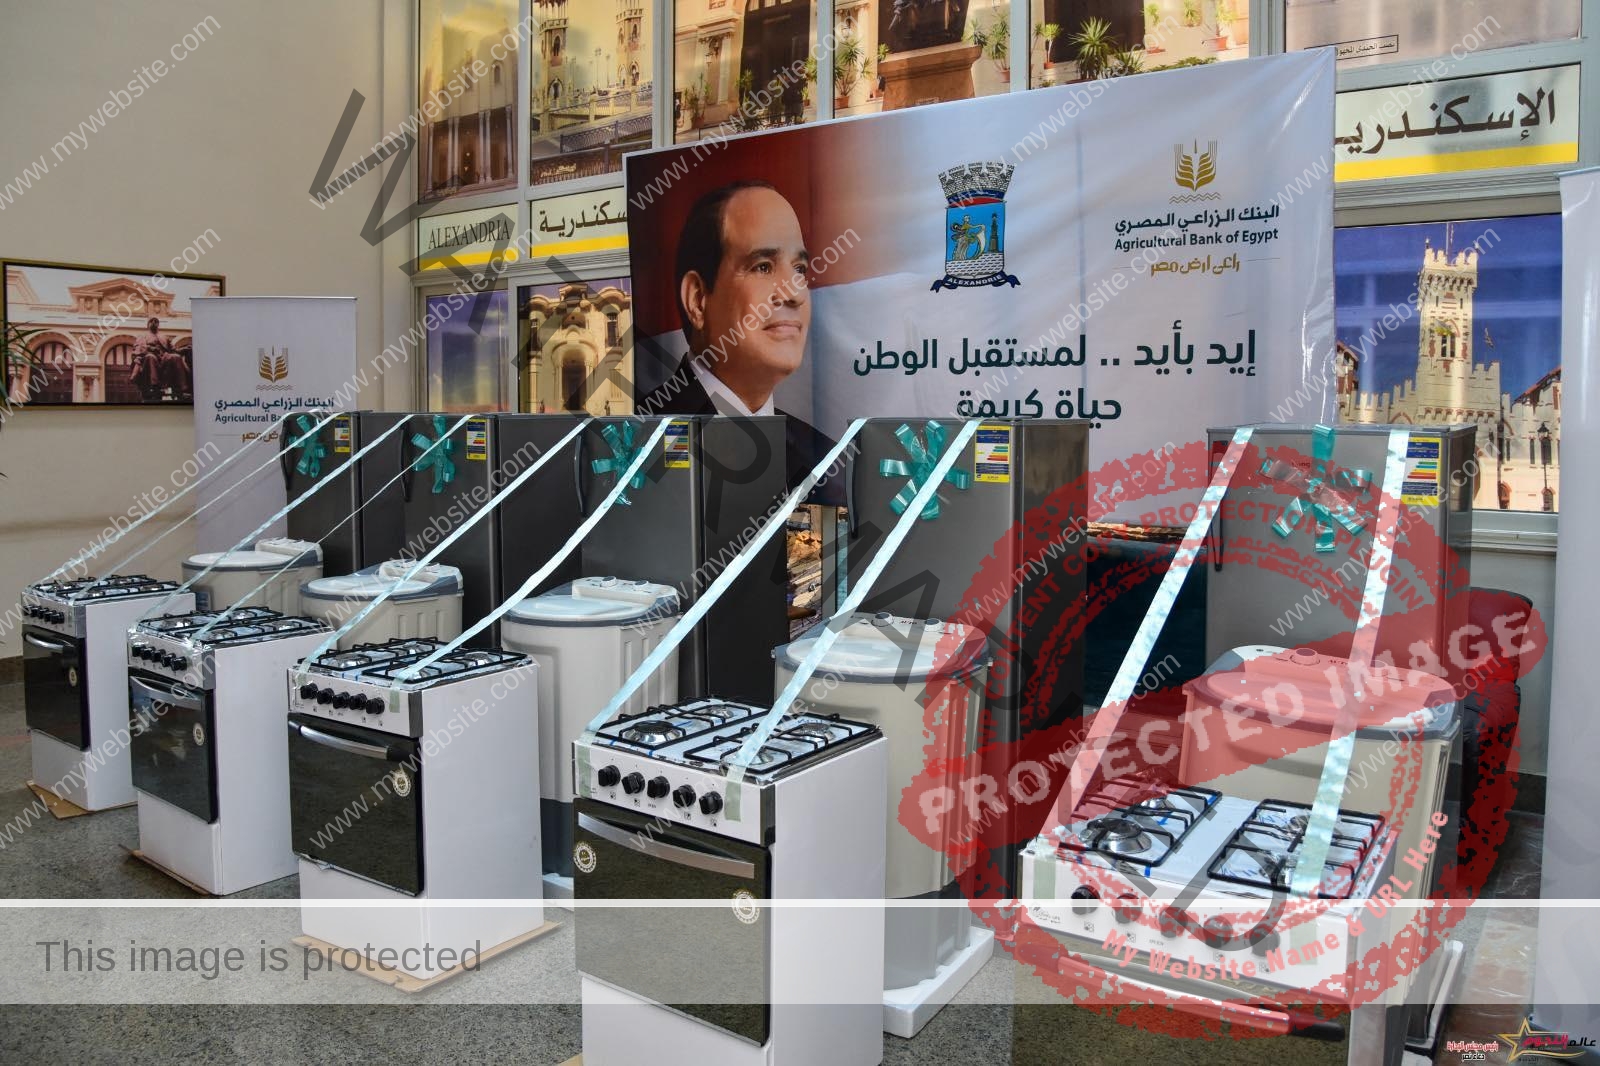 محافظ الإسكندرية يستقبل رئيس البنك الزراعي المصري ضمن مبادرة "أيد بإيد" لتقديم الدعم للأسر الأكثر احتياجًا